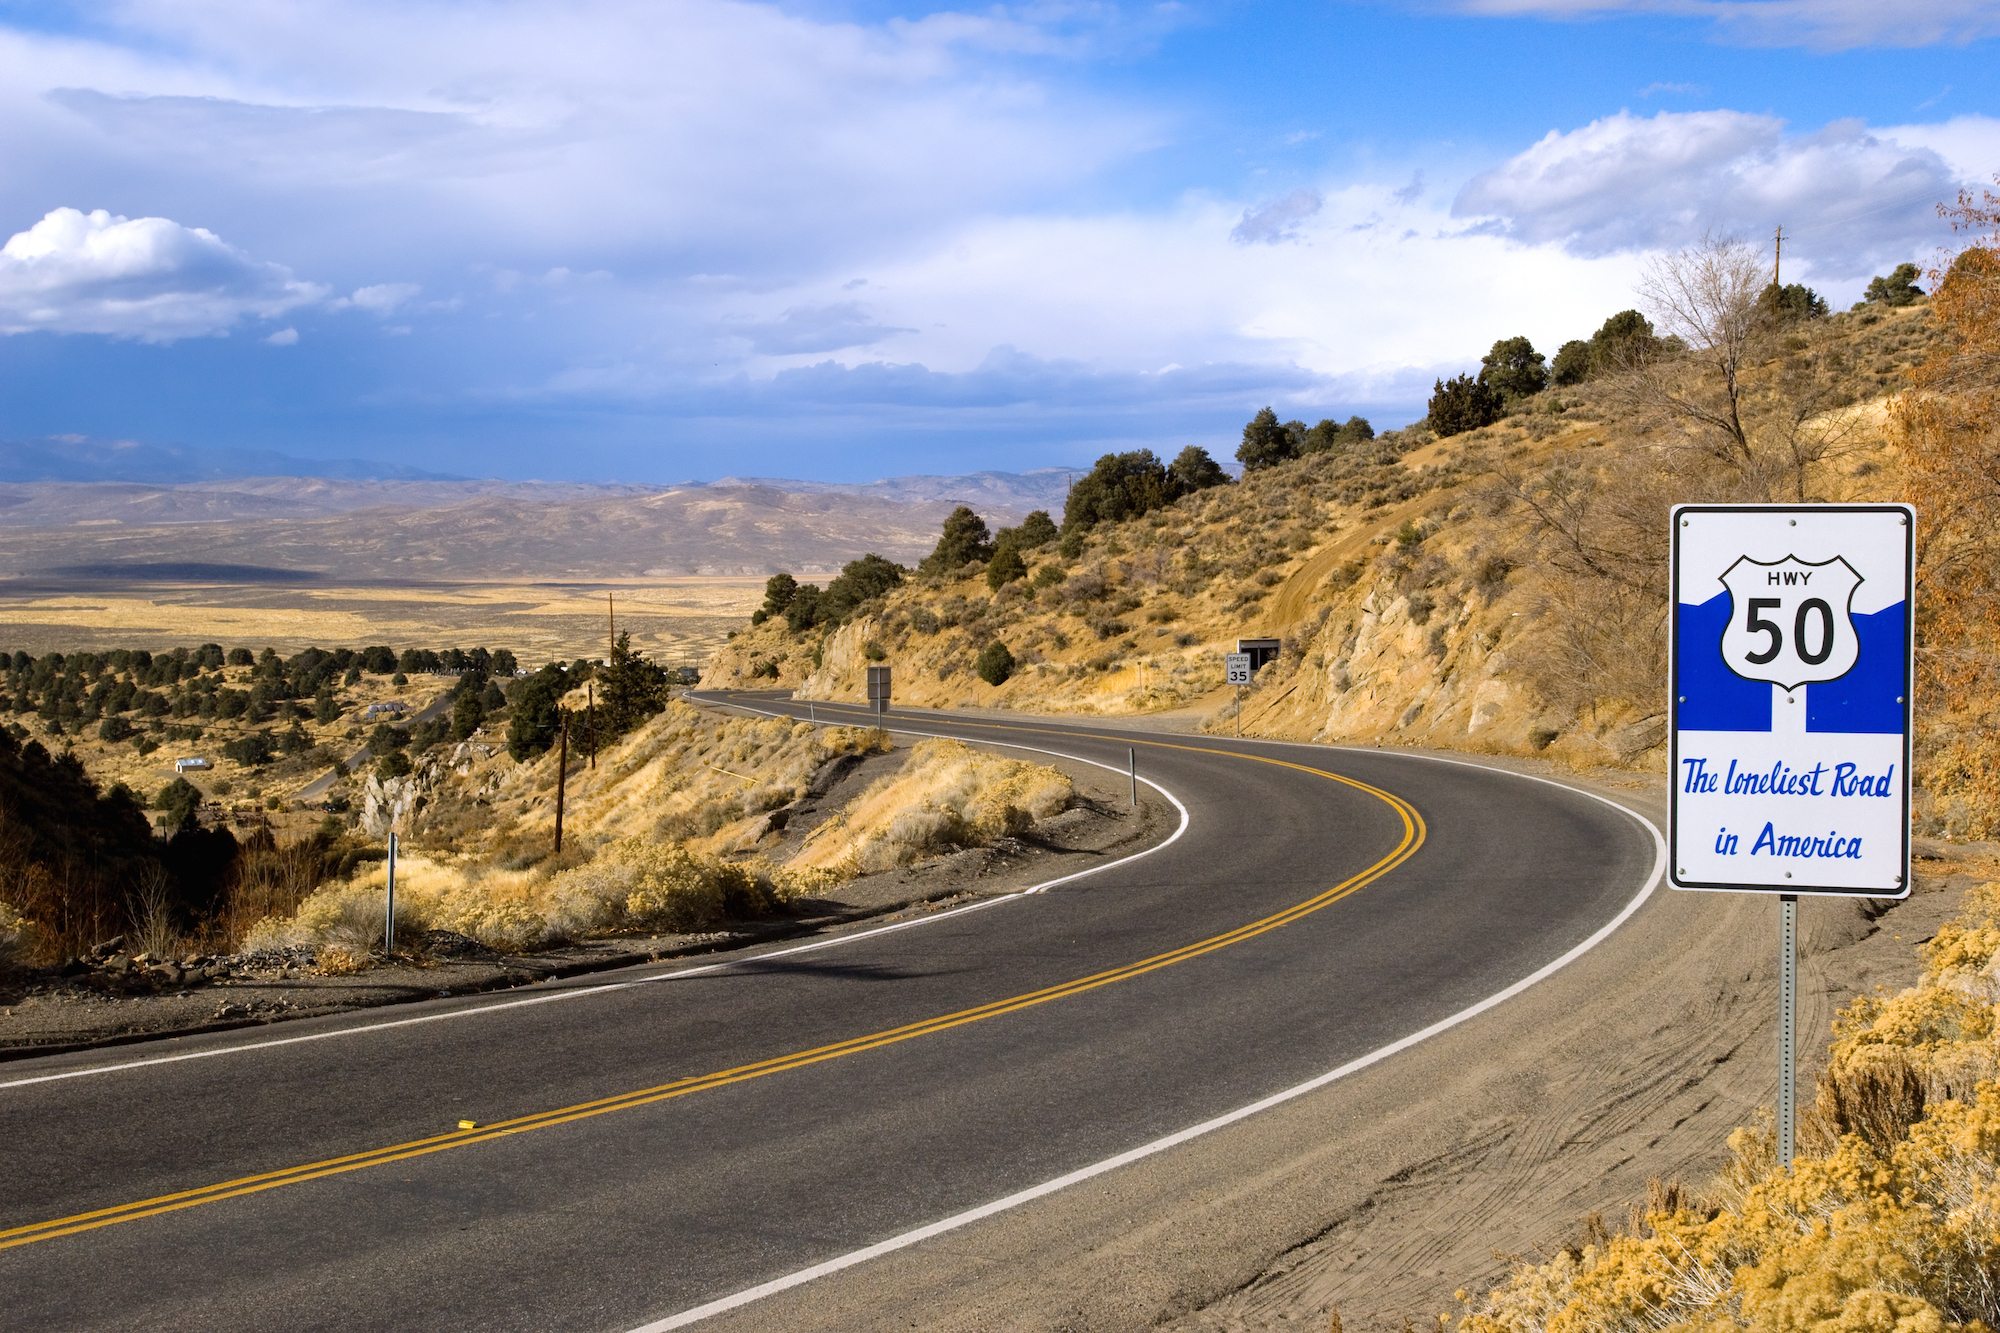 Highway 50: The Loneliest Road